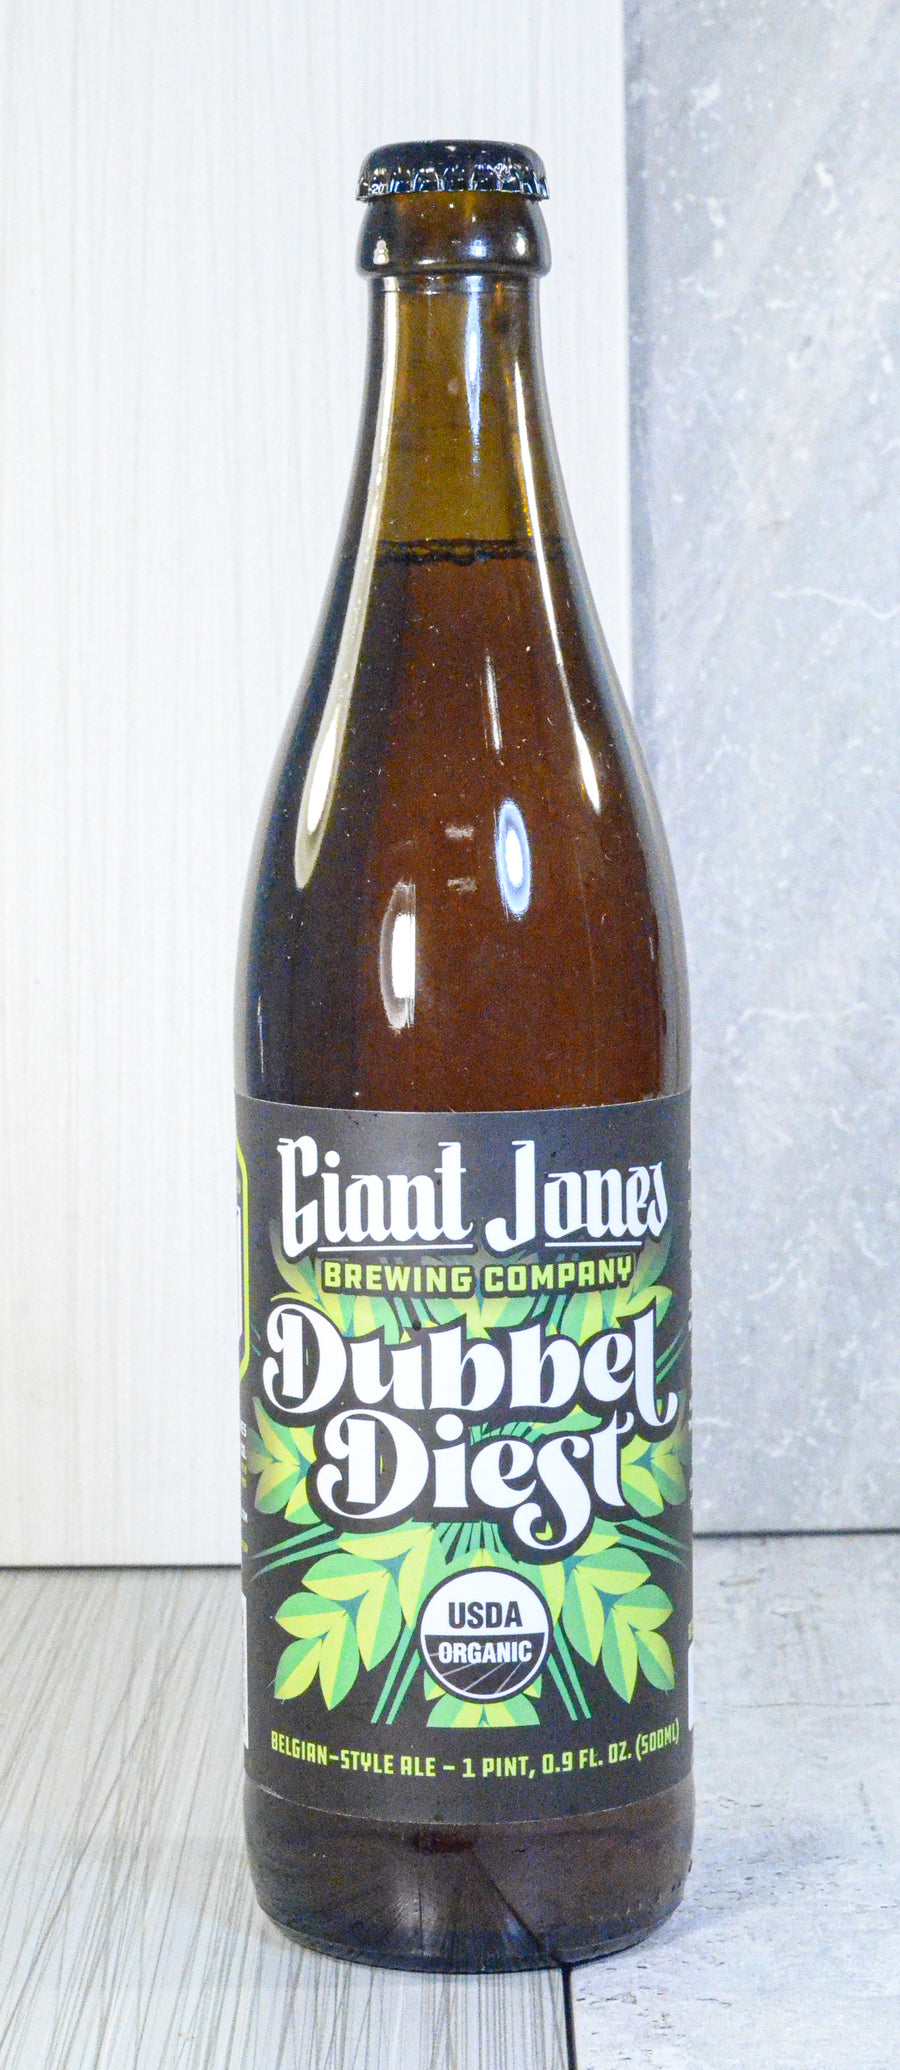 Giant Jones Brewing, Dubbel Diest